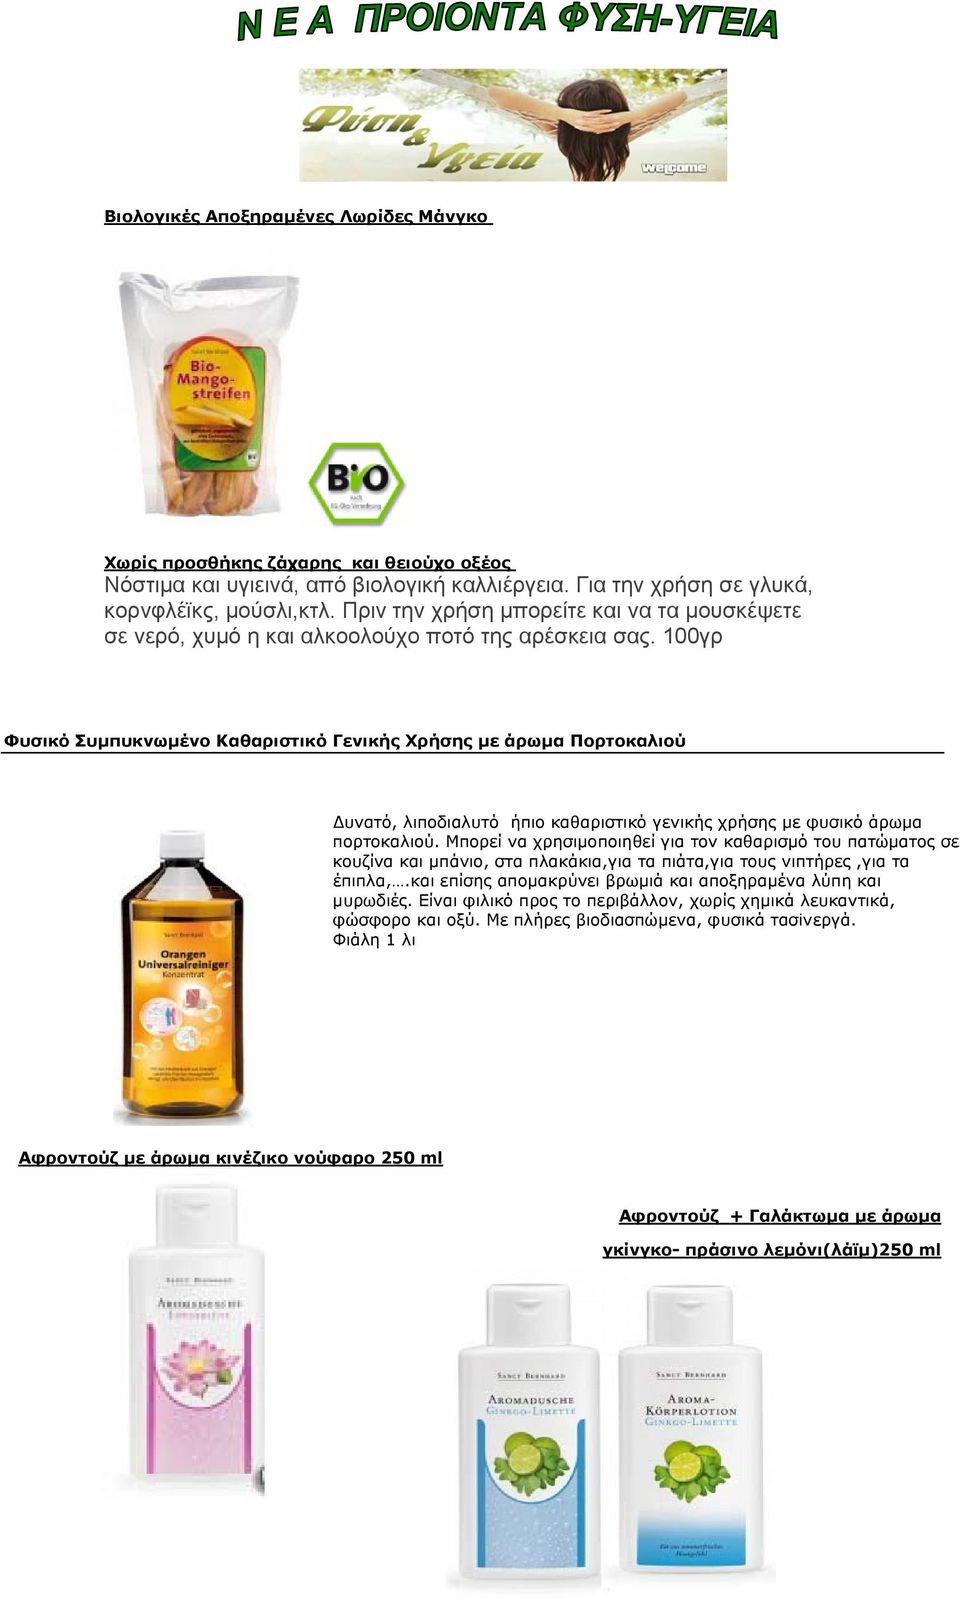 100γρ Φυσικό Συμπυκνωμένο Καθαριστικό Γενικής Χρήσης με άρωμα Πορτοκαλιού υνατό, λιποδιαλυτό ήπιο καθαριστικό γενικής χρήσης με φυσικό άρωμα πορτοκαλιού.